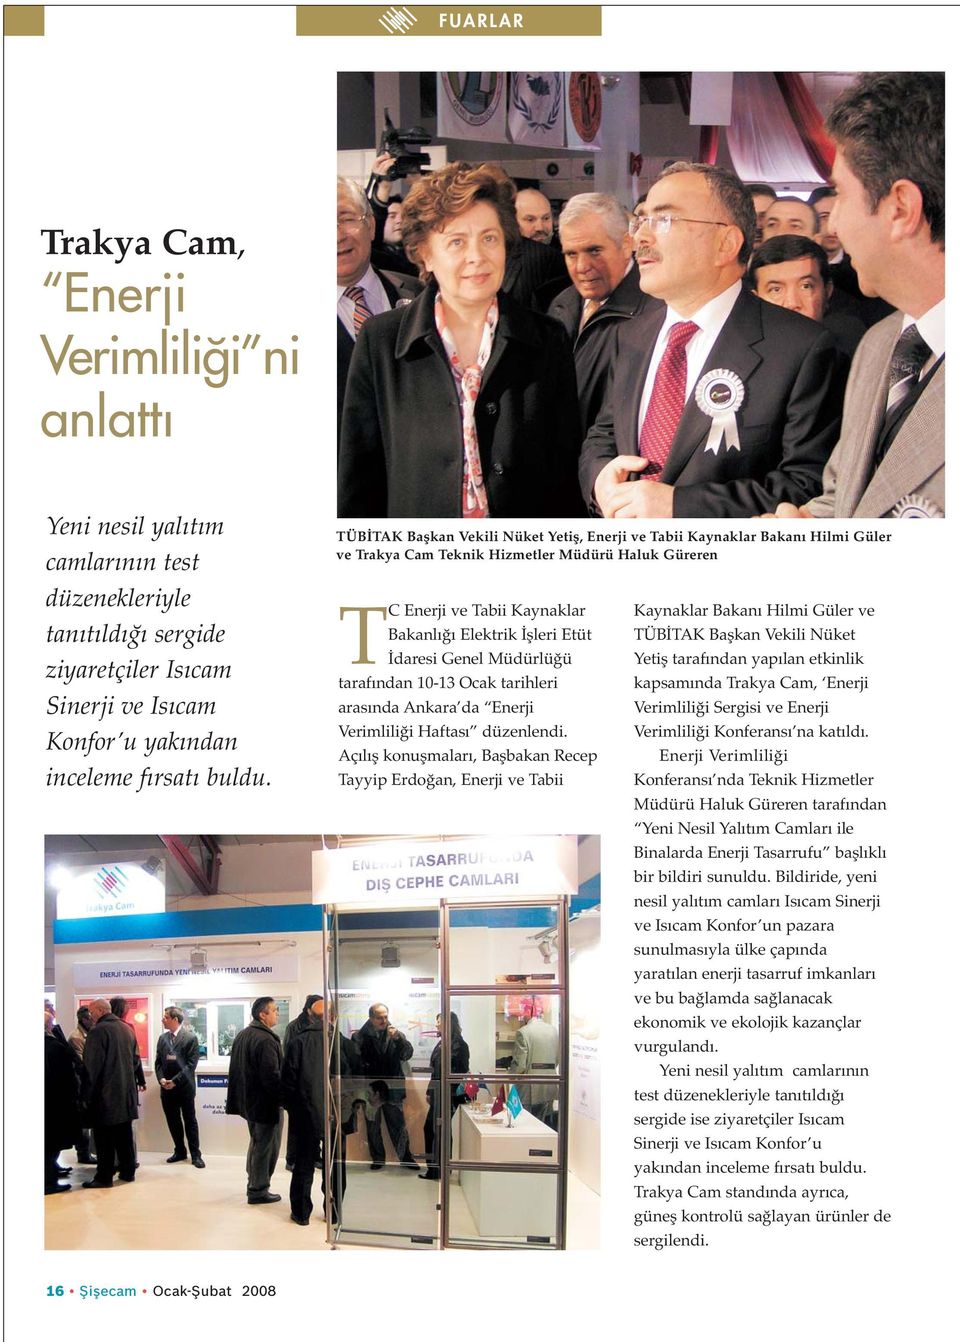 Genel Müdürlüğü tarafından 10-13 Ocak tarihleri arasında Ankara da Enerji Verimliliği Haftası düzenlendi.